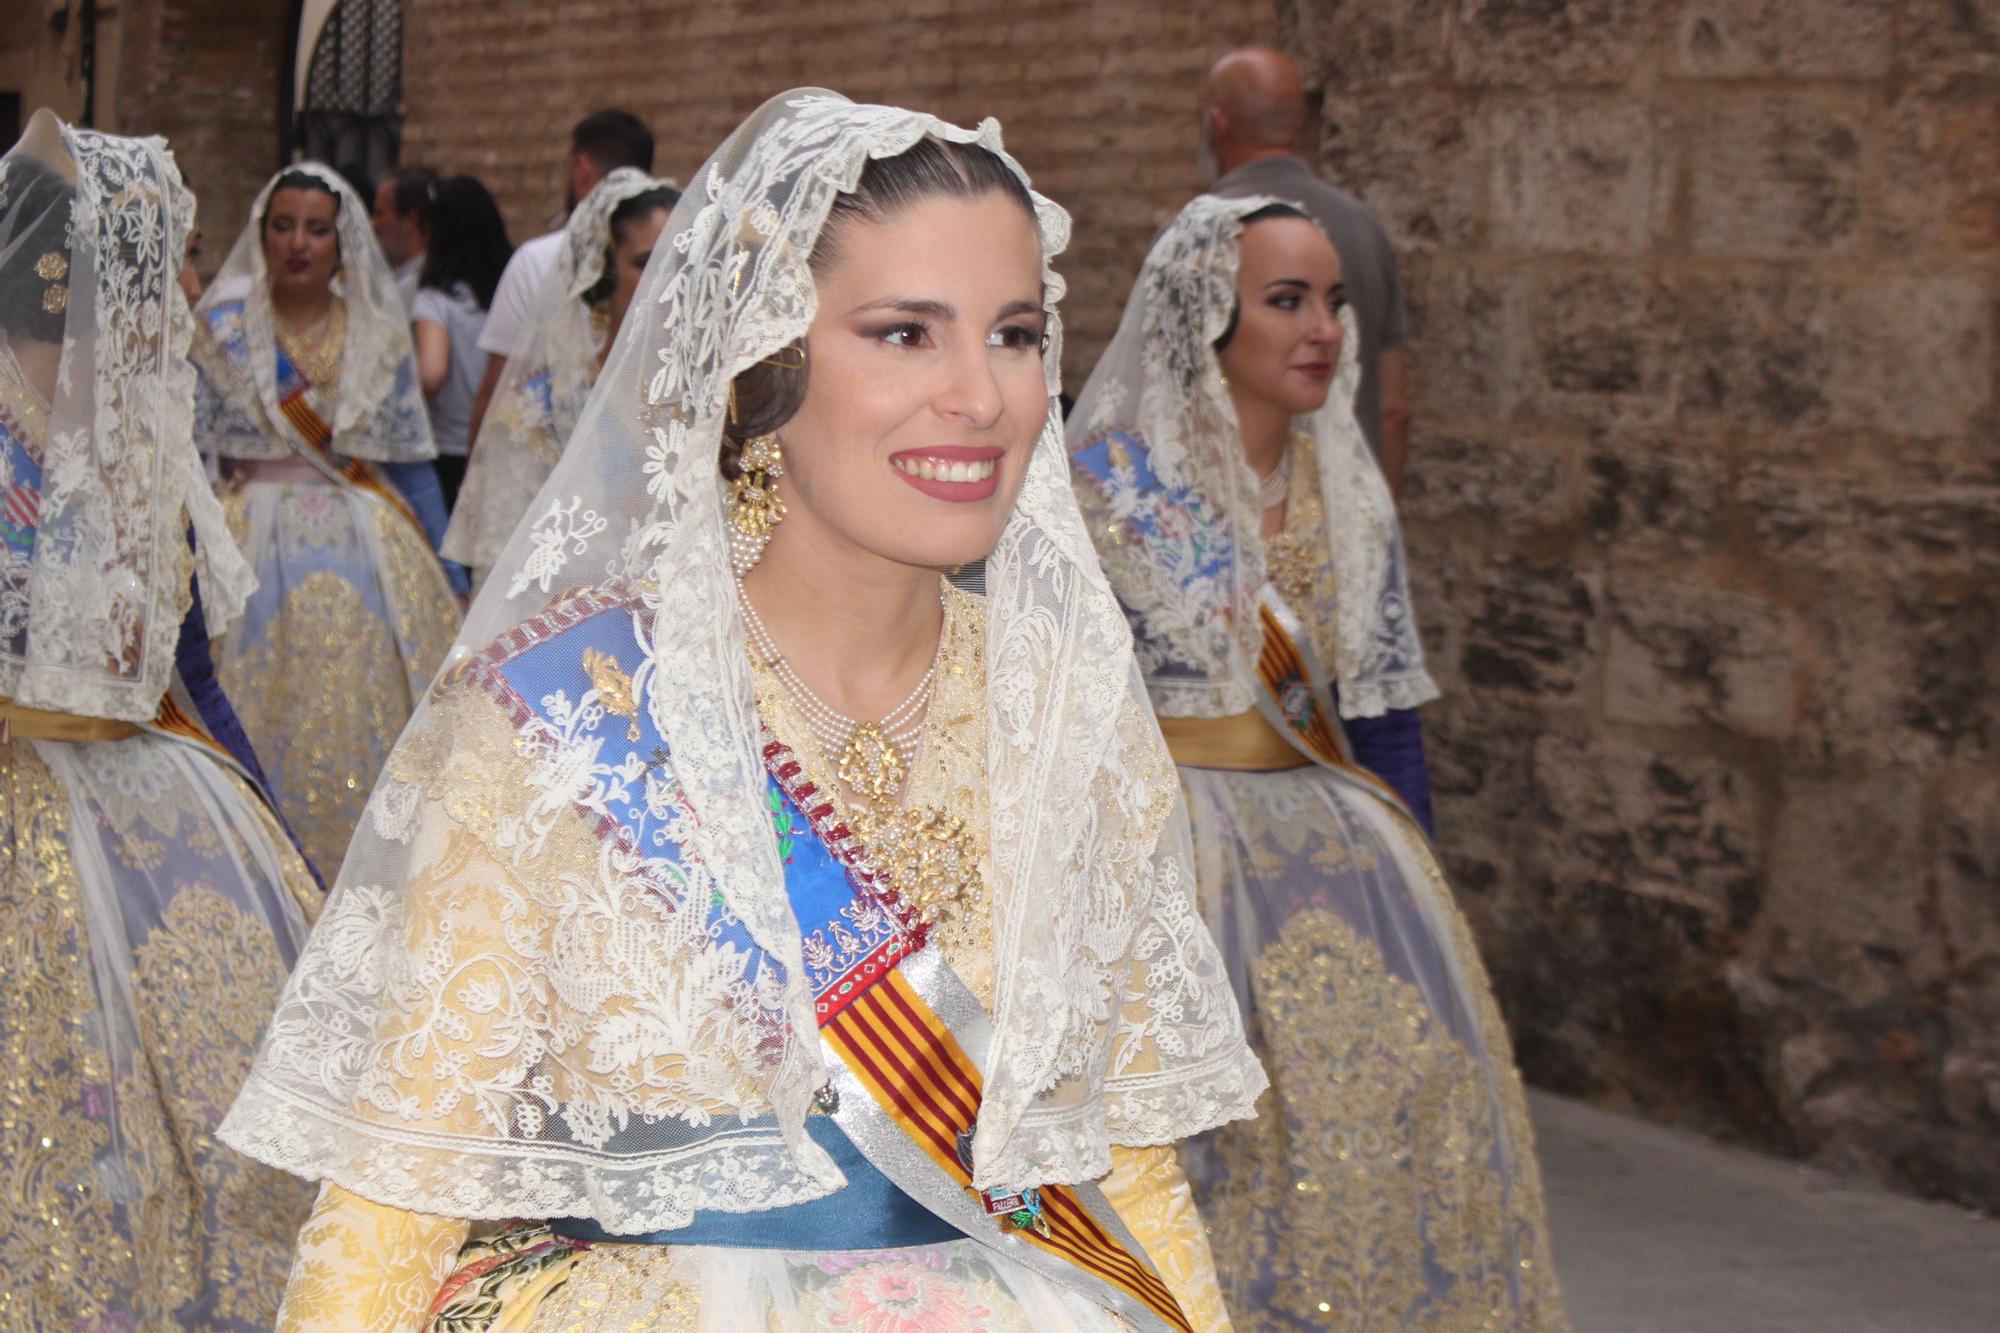 Fallas y fiestas tradicionales se dan la mano en Sant Bult